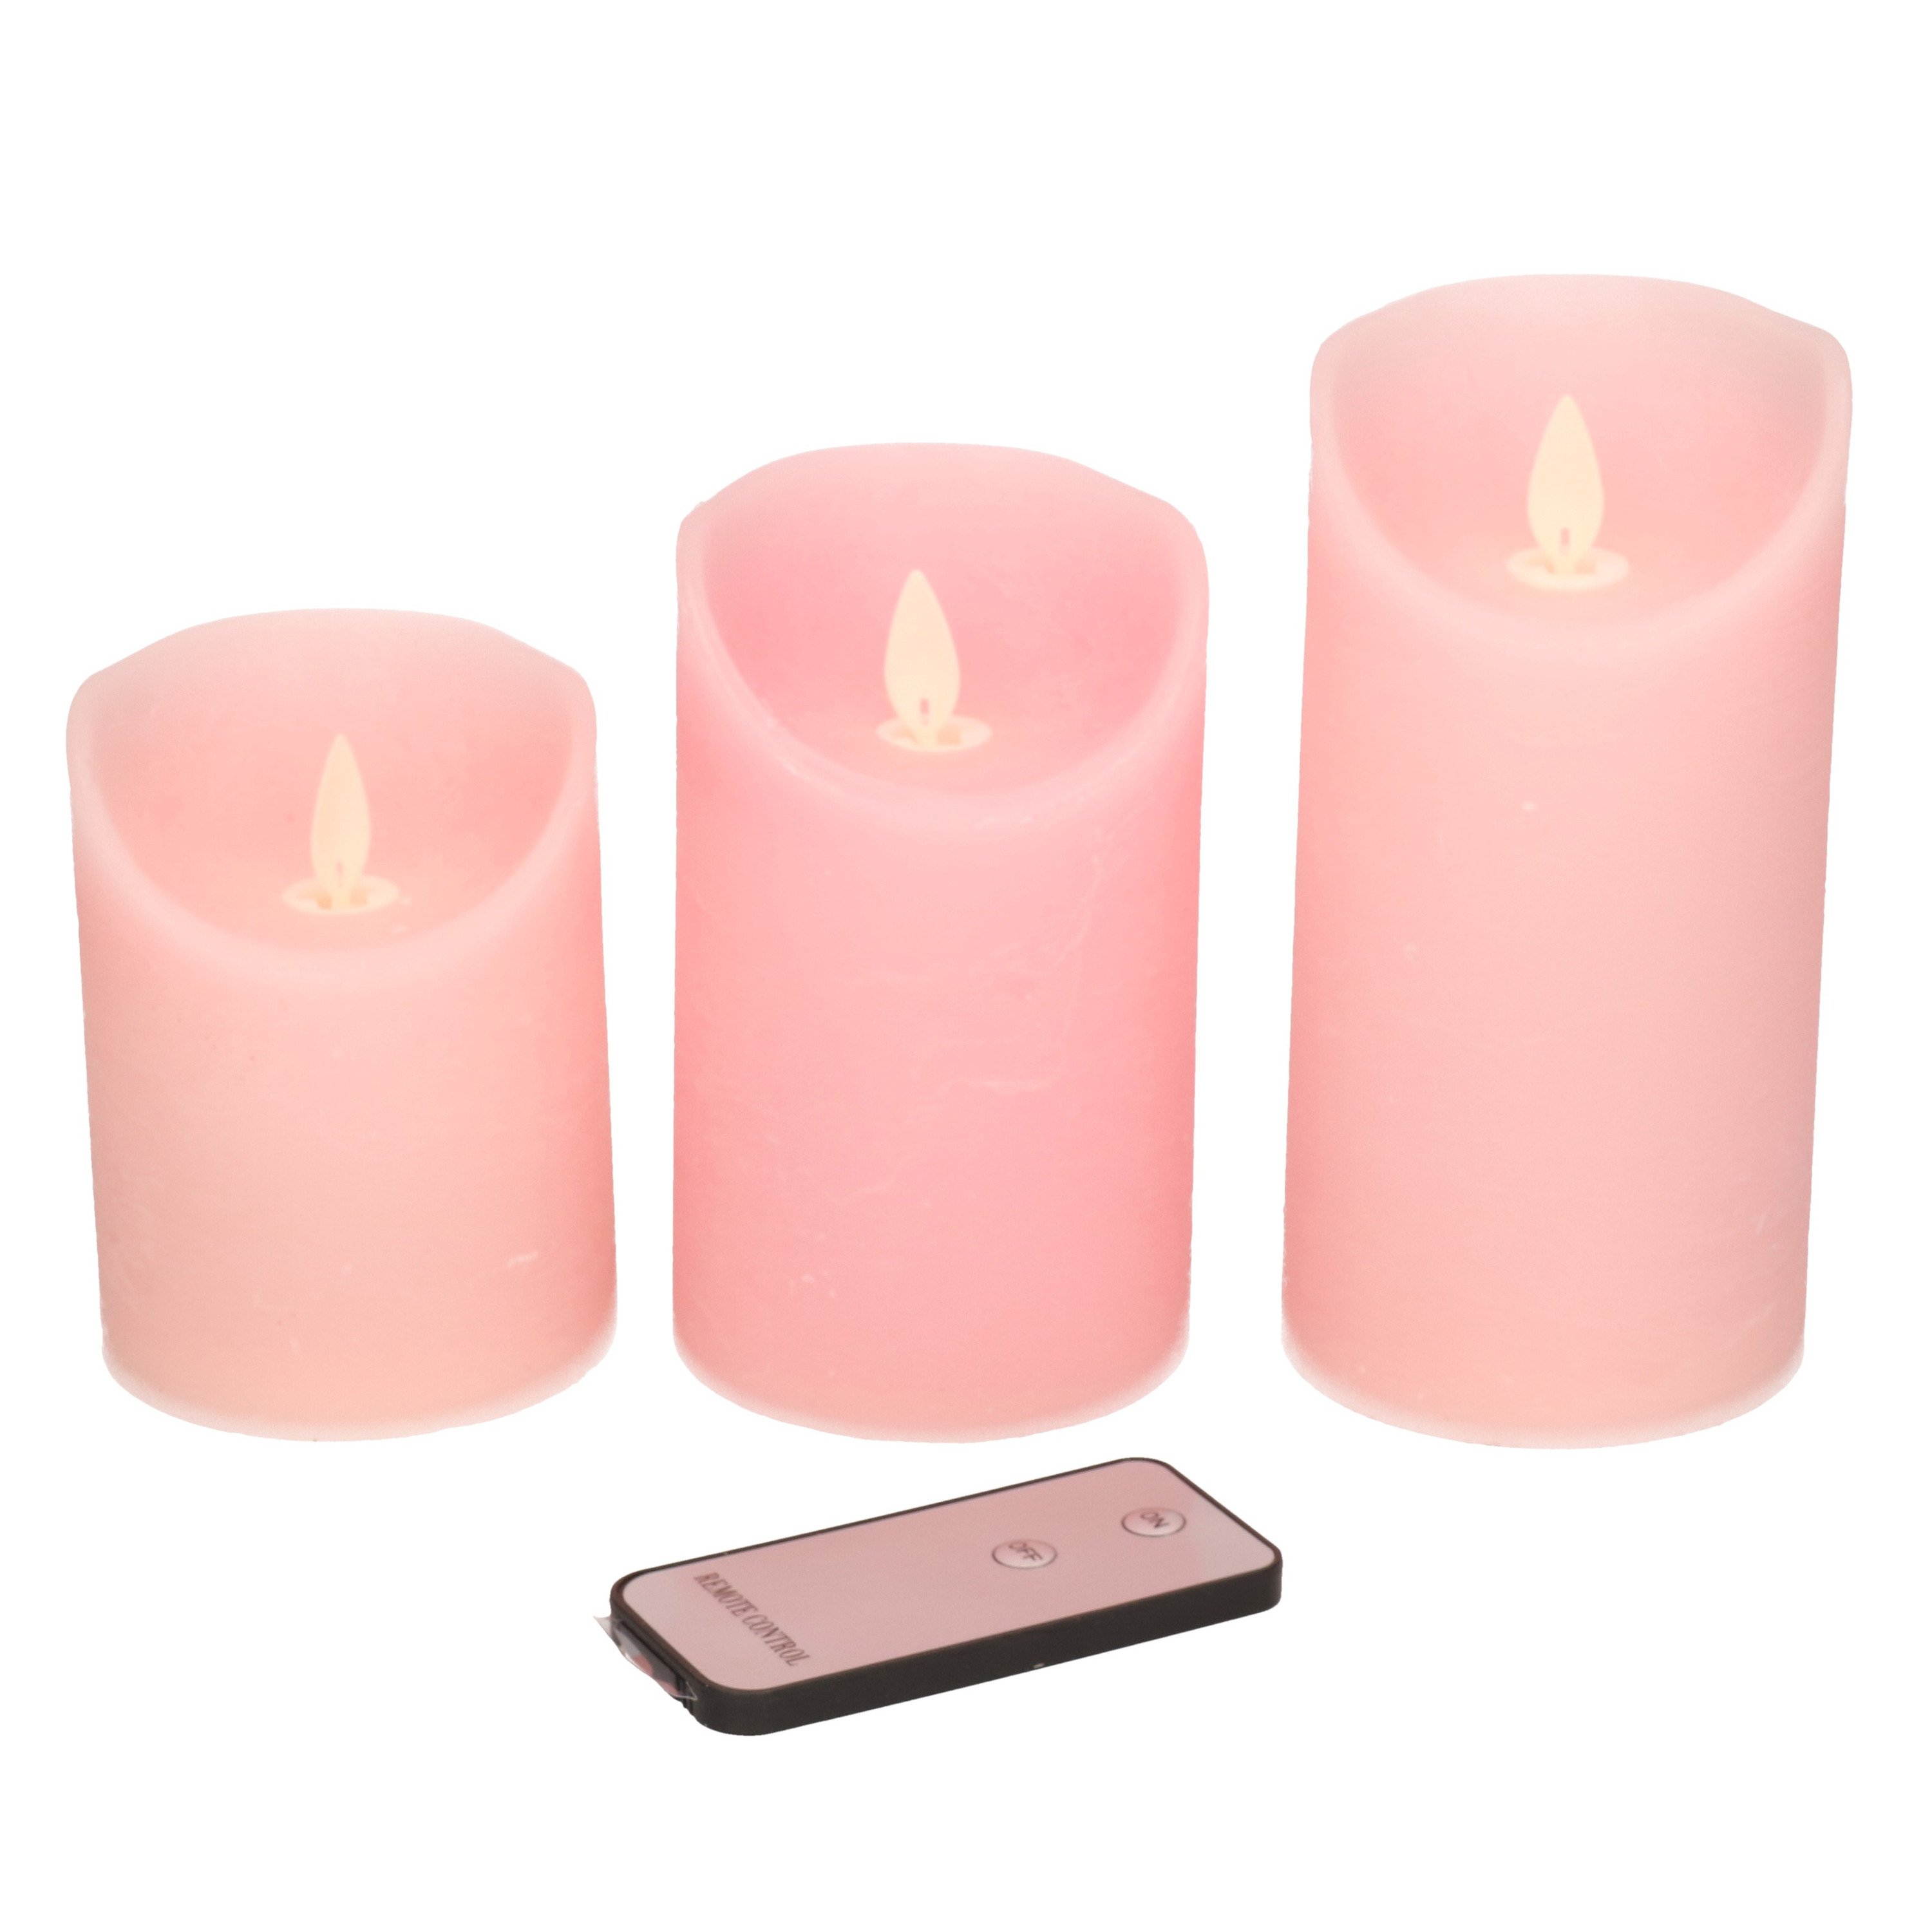 3x Roze LED kaarsen op batterijen inclusief afstandsbediening